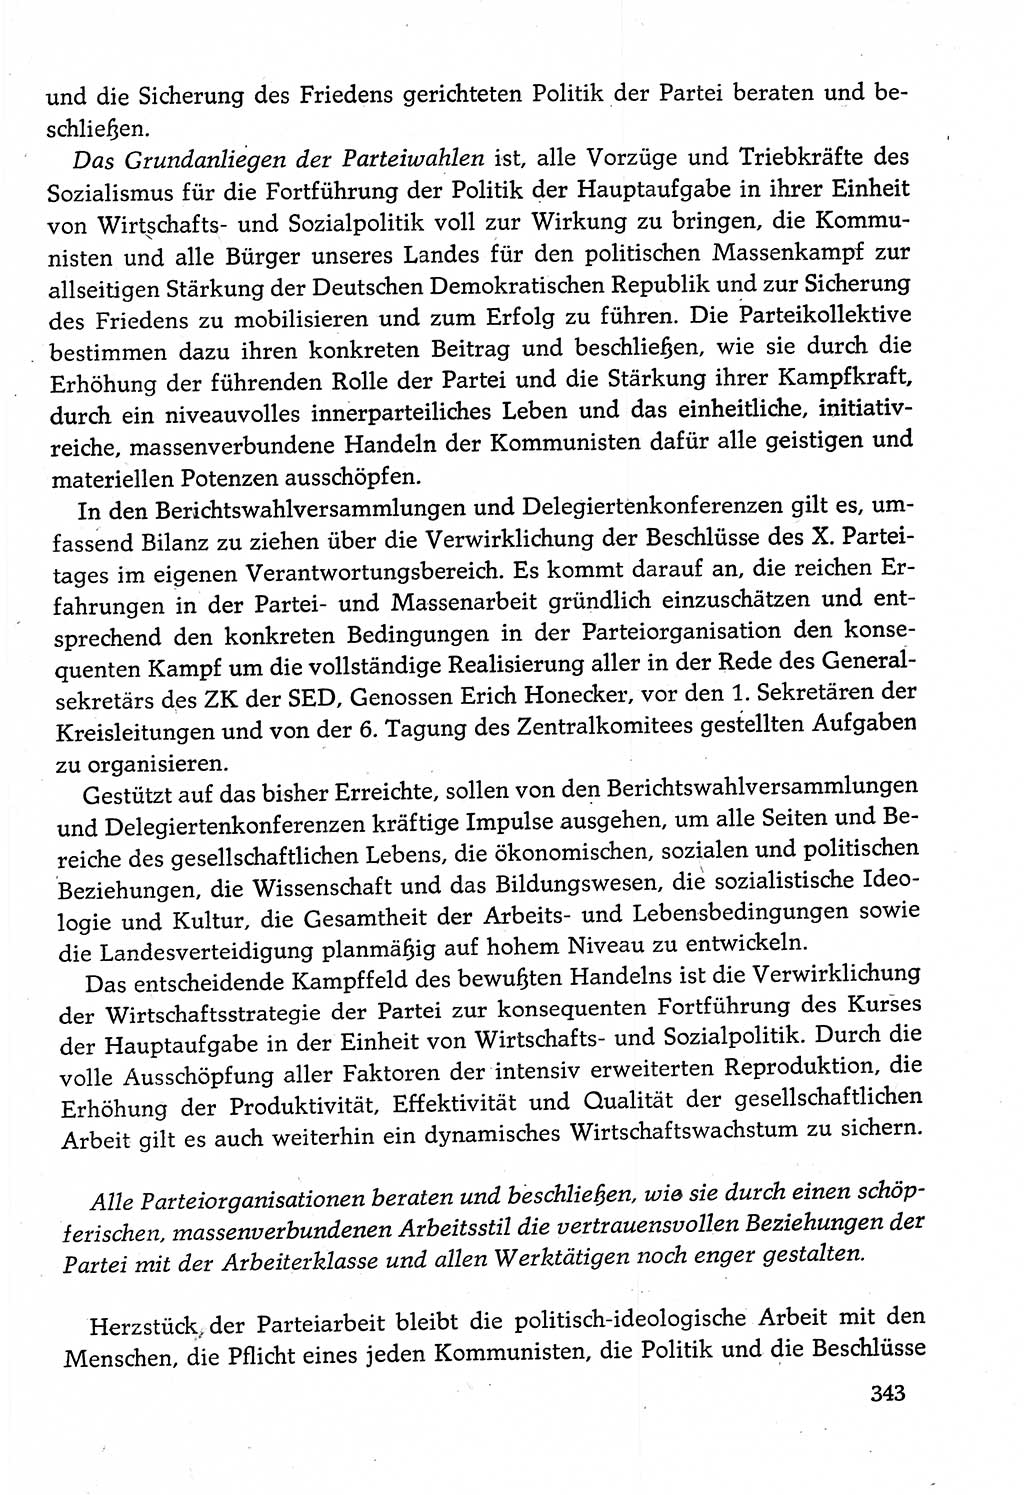 Dokumente der Sozialistischen Einheitspartei Deutschlands (SED) [Deutsche Demokratische Republik (DDR)] 1982-1983, Seite 343 (Dok. SED DDR 1982-1983, S. 343)